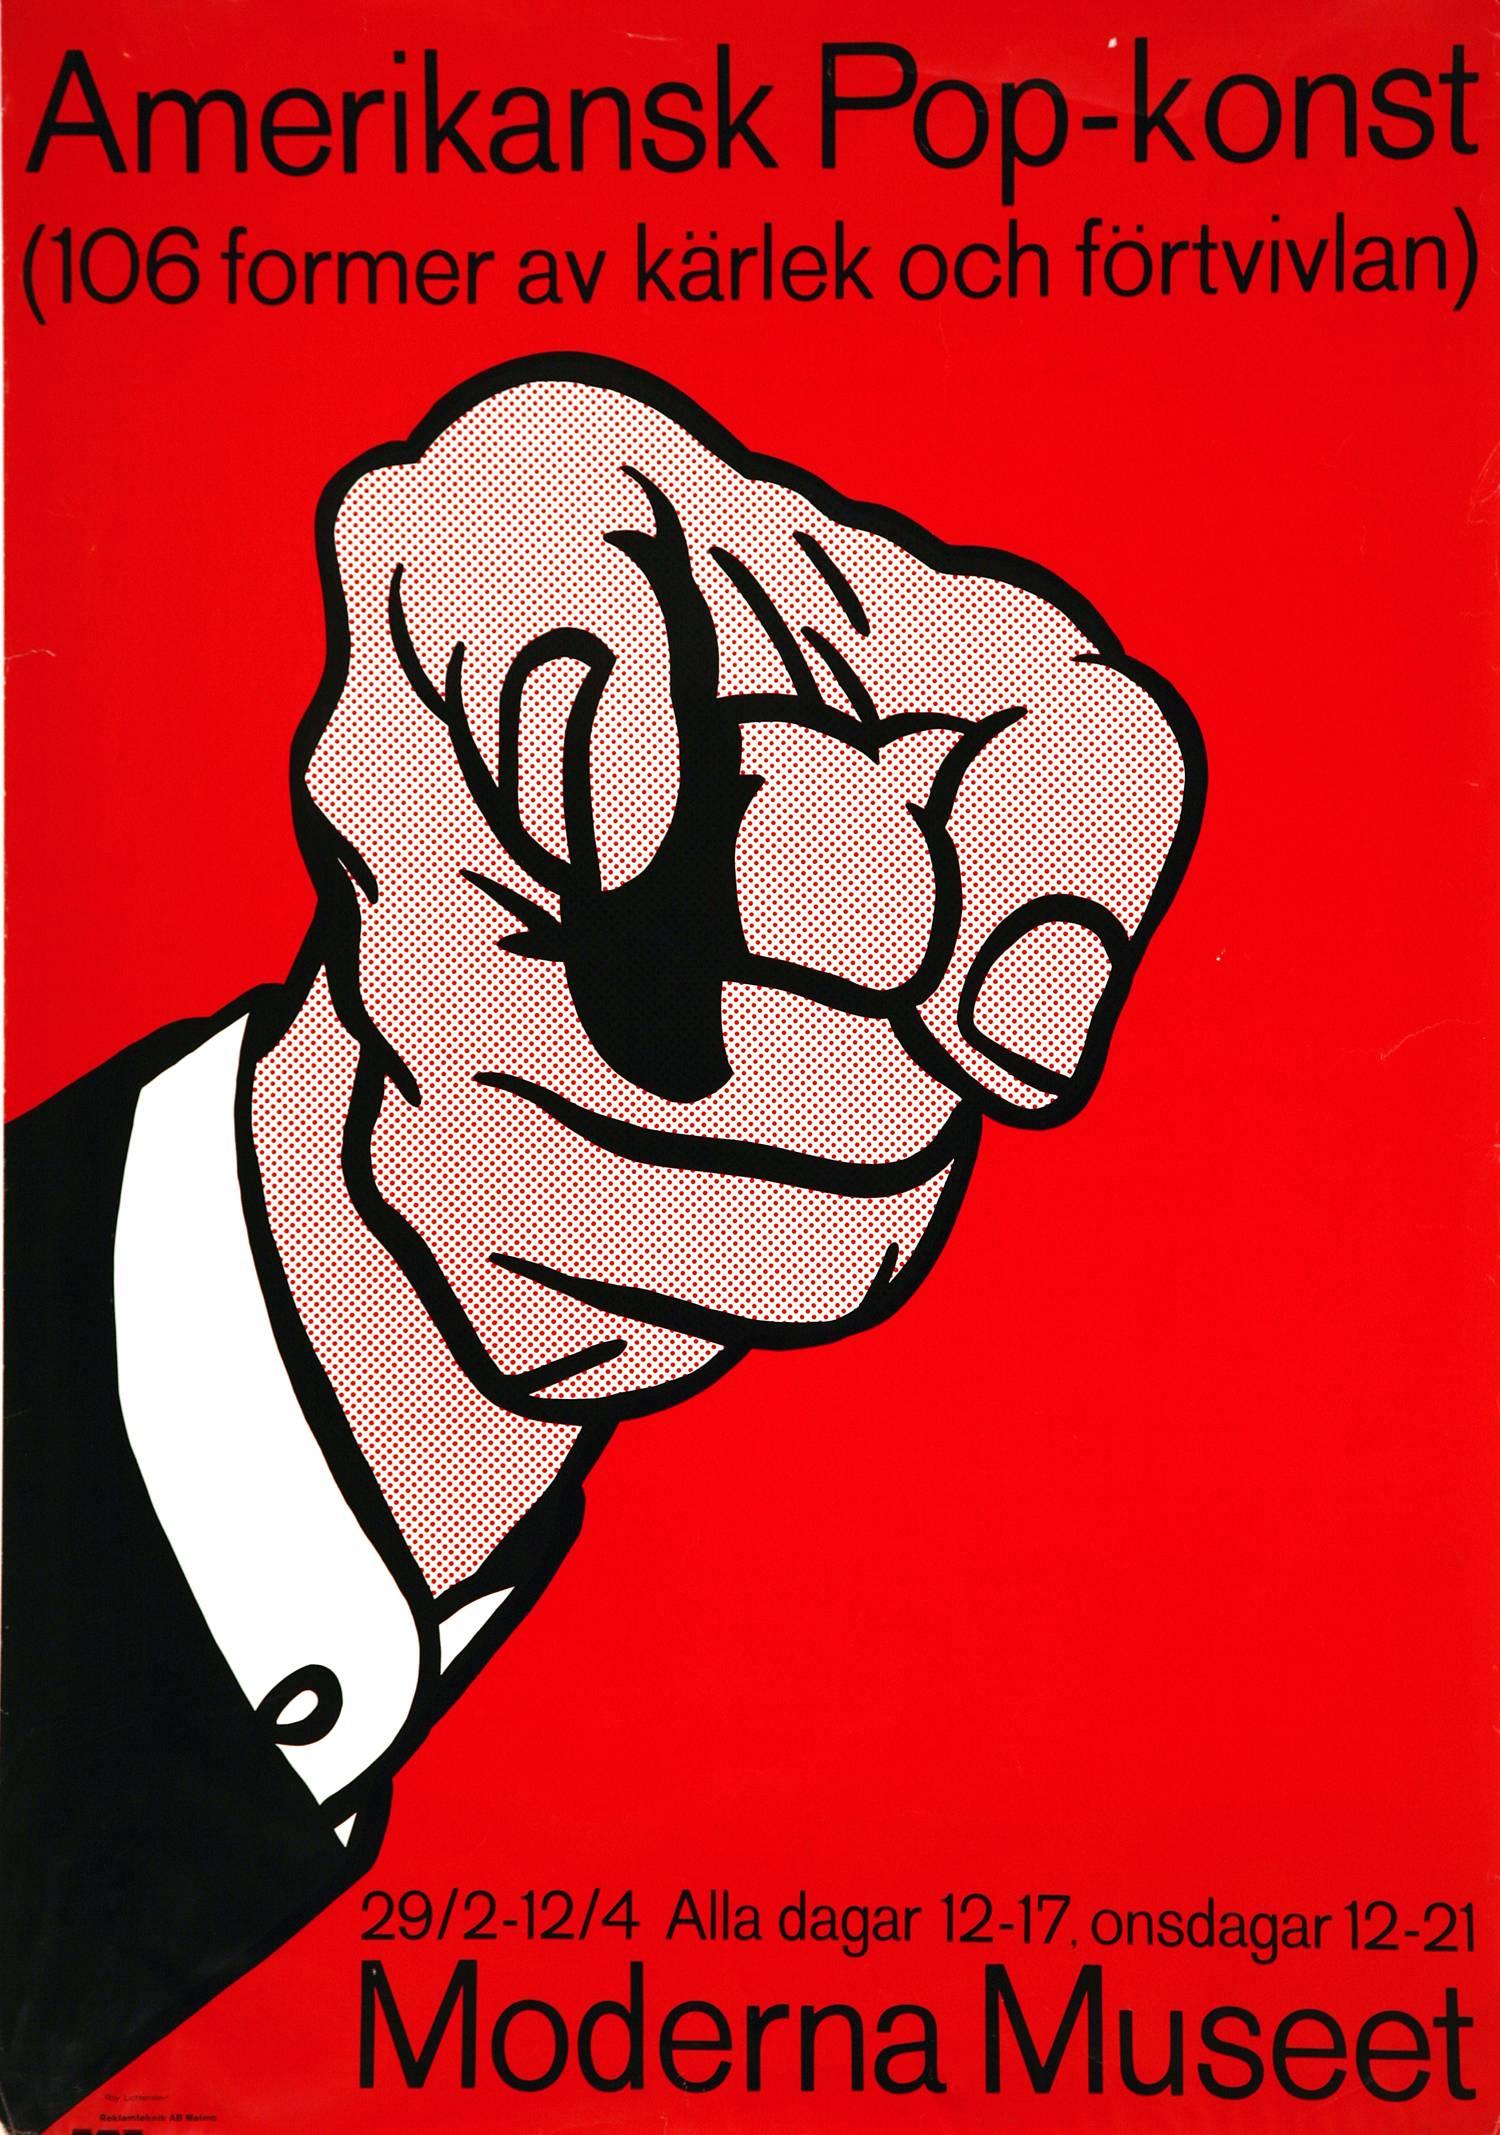 Roy Lichtenstein Figurative Print - "Amerikansk Pop-Konst" Exhibit Poster